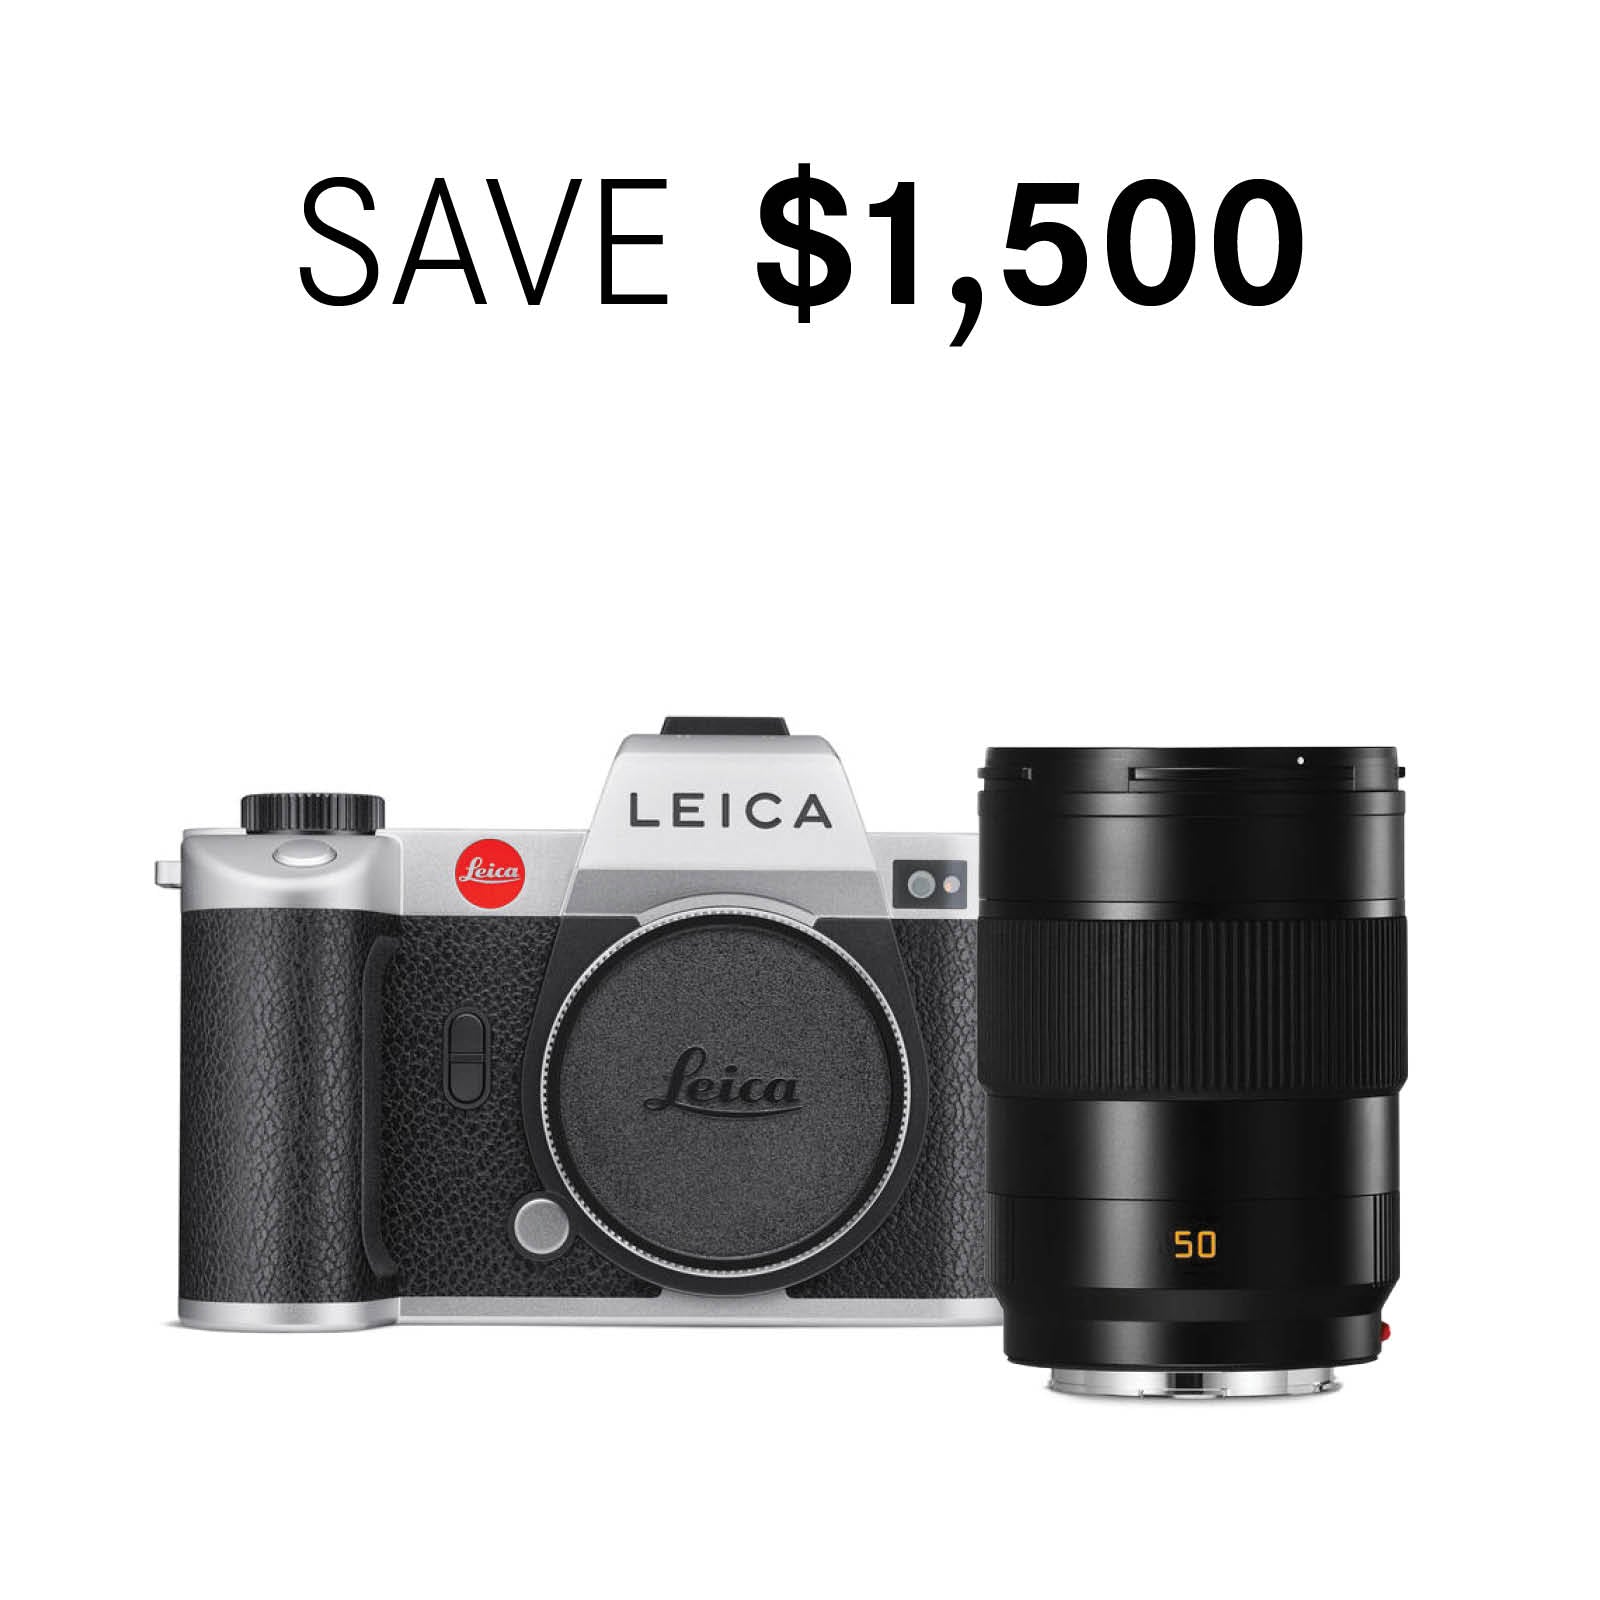 Leica SL2 Silver Edition Bundle with APO-Summicron-SL 50mm f/2 ASPH